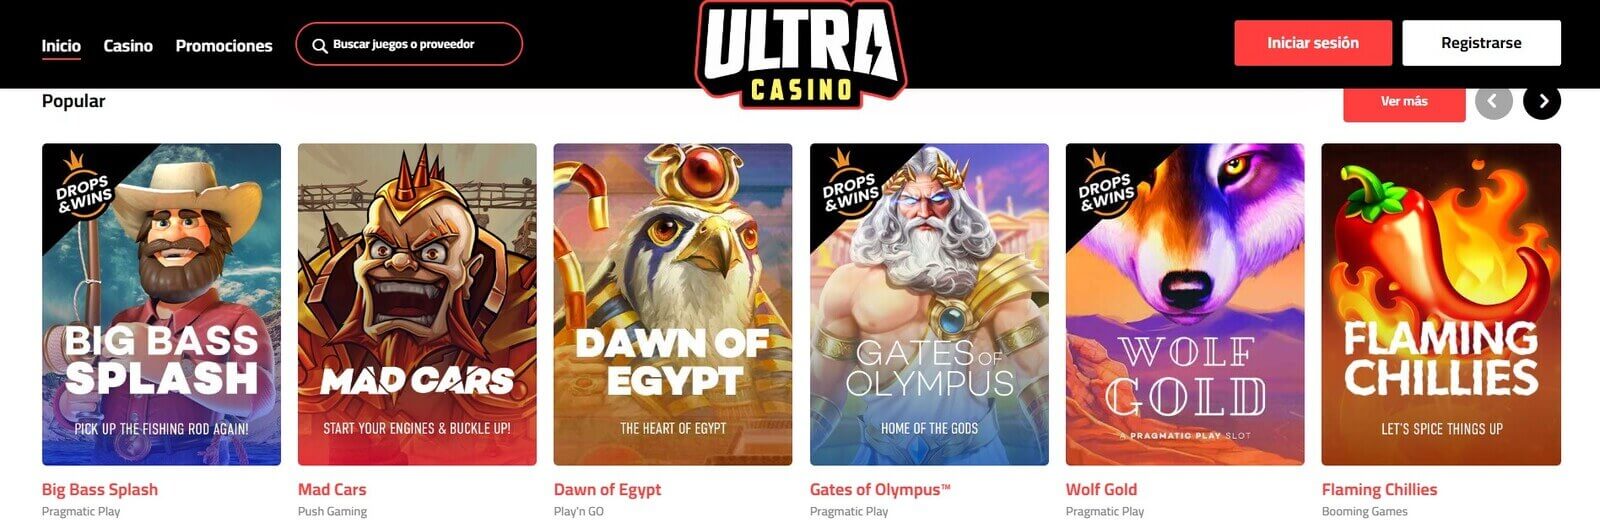 Jugar a las tragamonedas de Ultra Casino Casino online